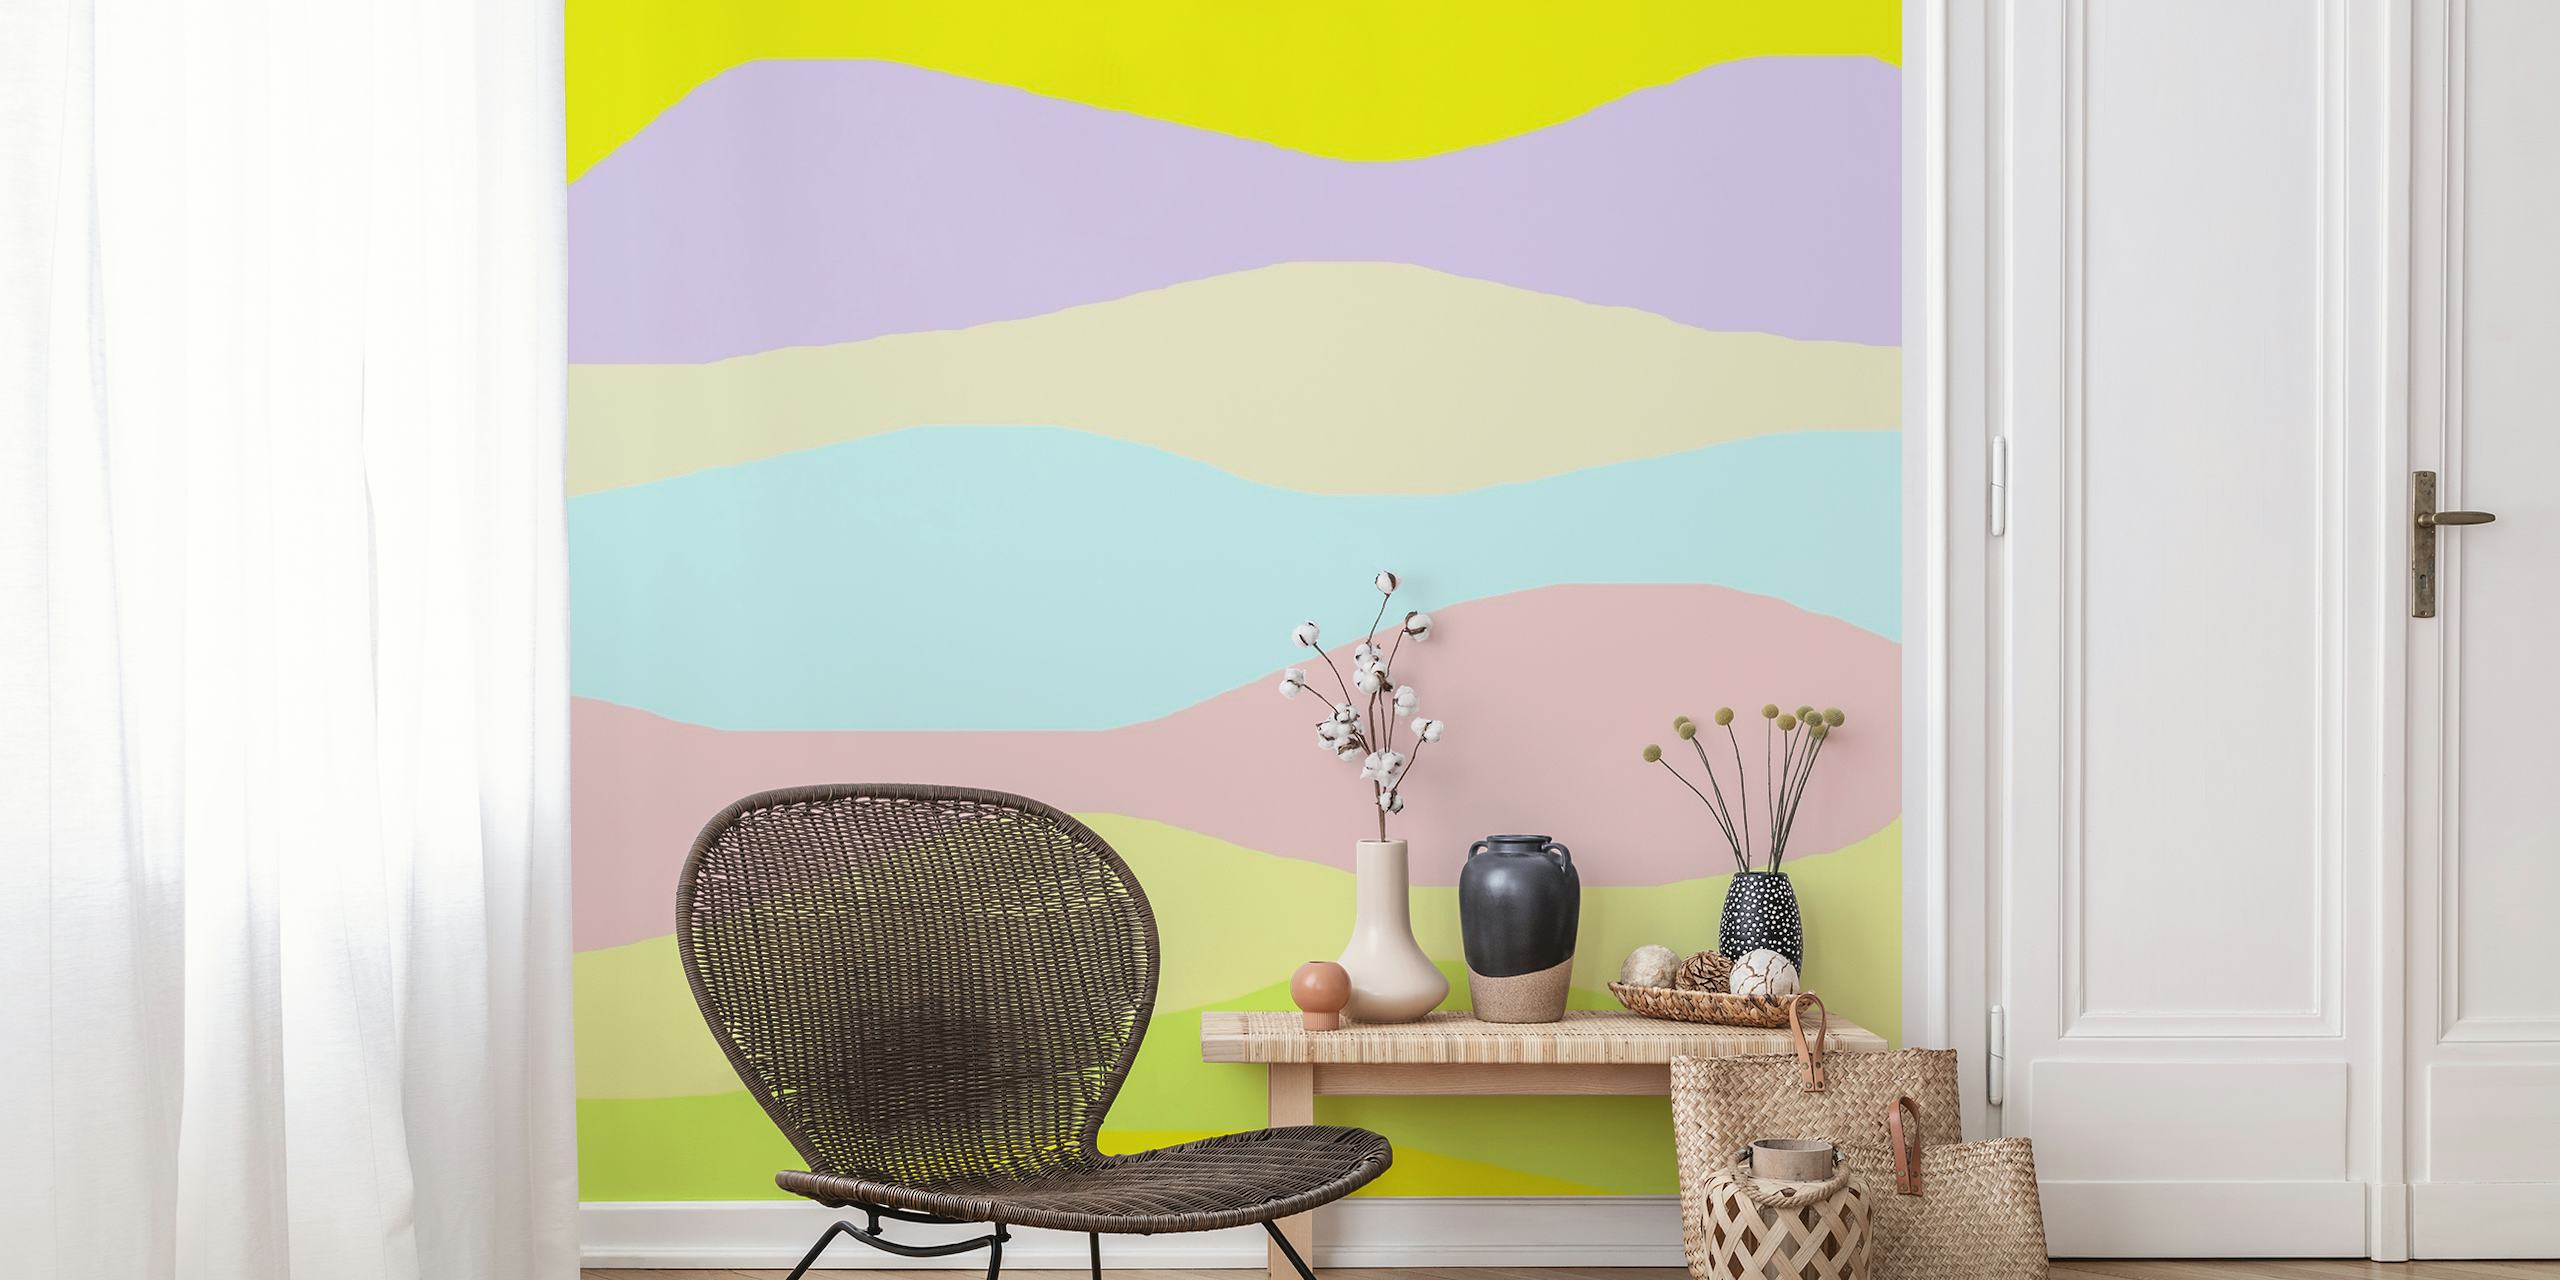 Abstrakcyjna fototapeta z falami w pastelowych kolorach, zapewniająca spokojną domową atmosferę